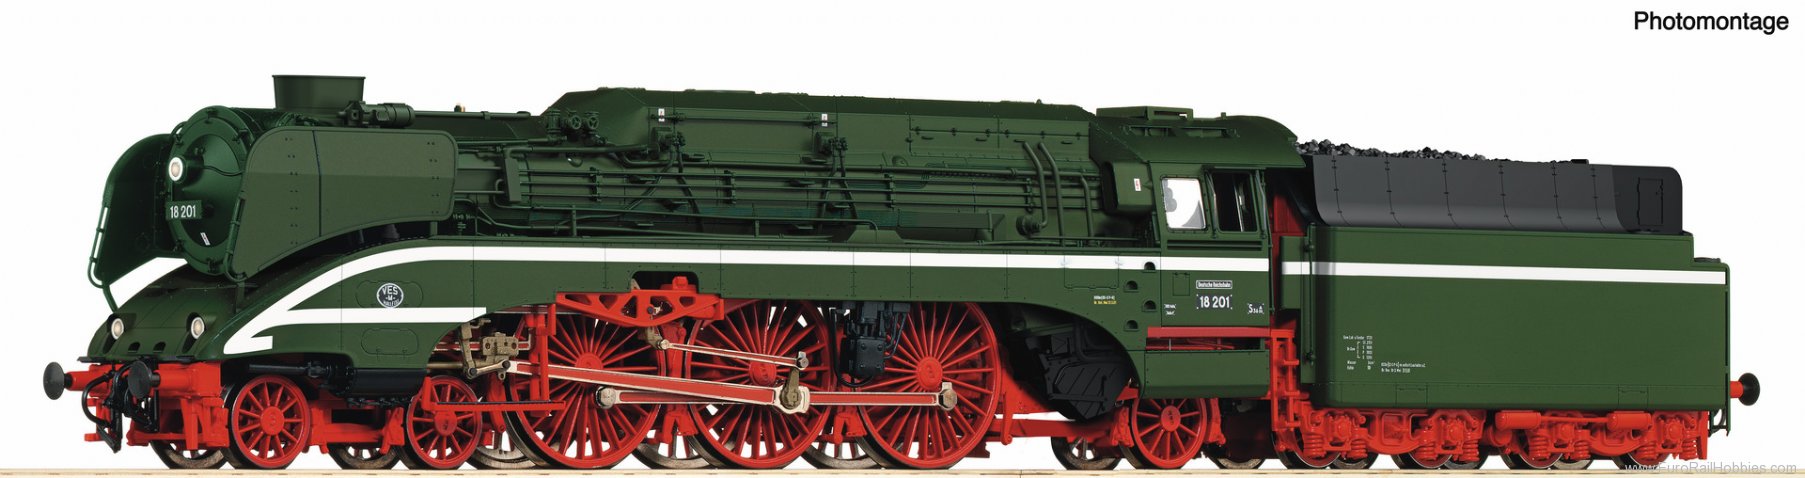 Roco 7100006 High-speed steam locomotive 18 201, coil-fire